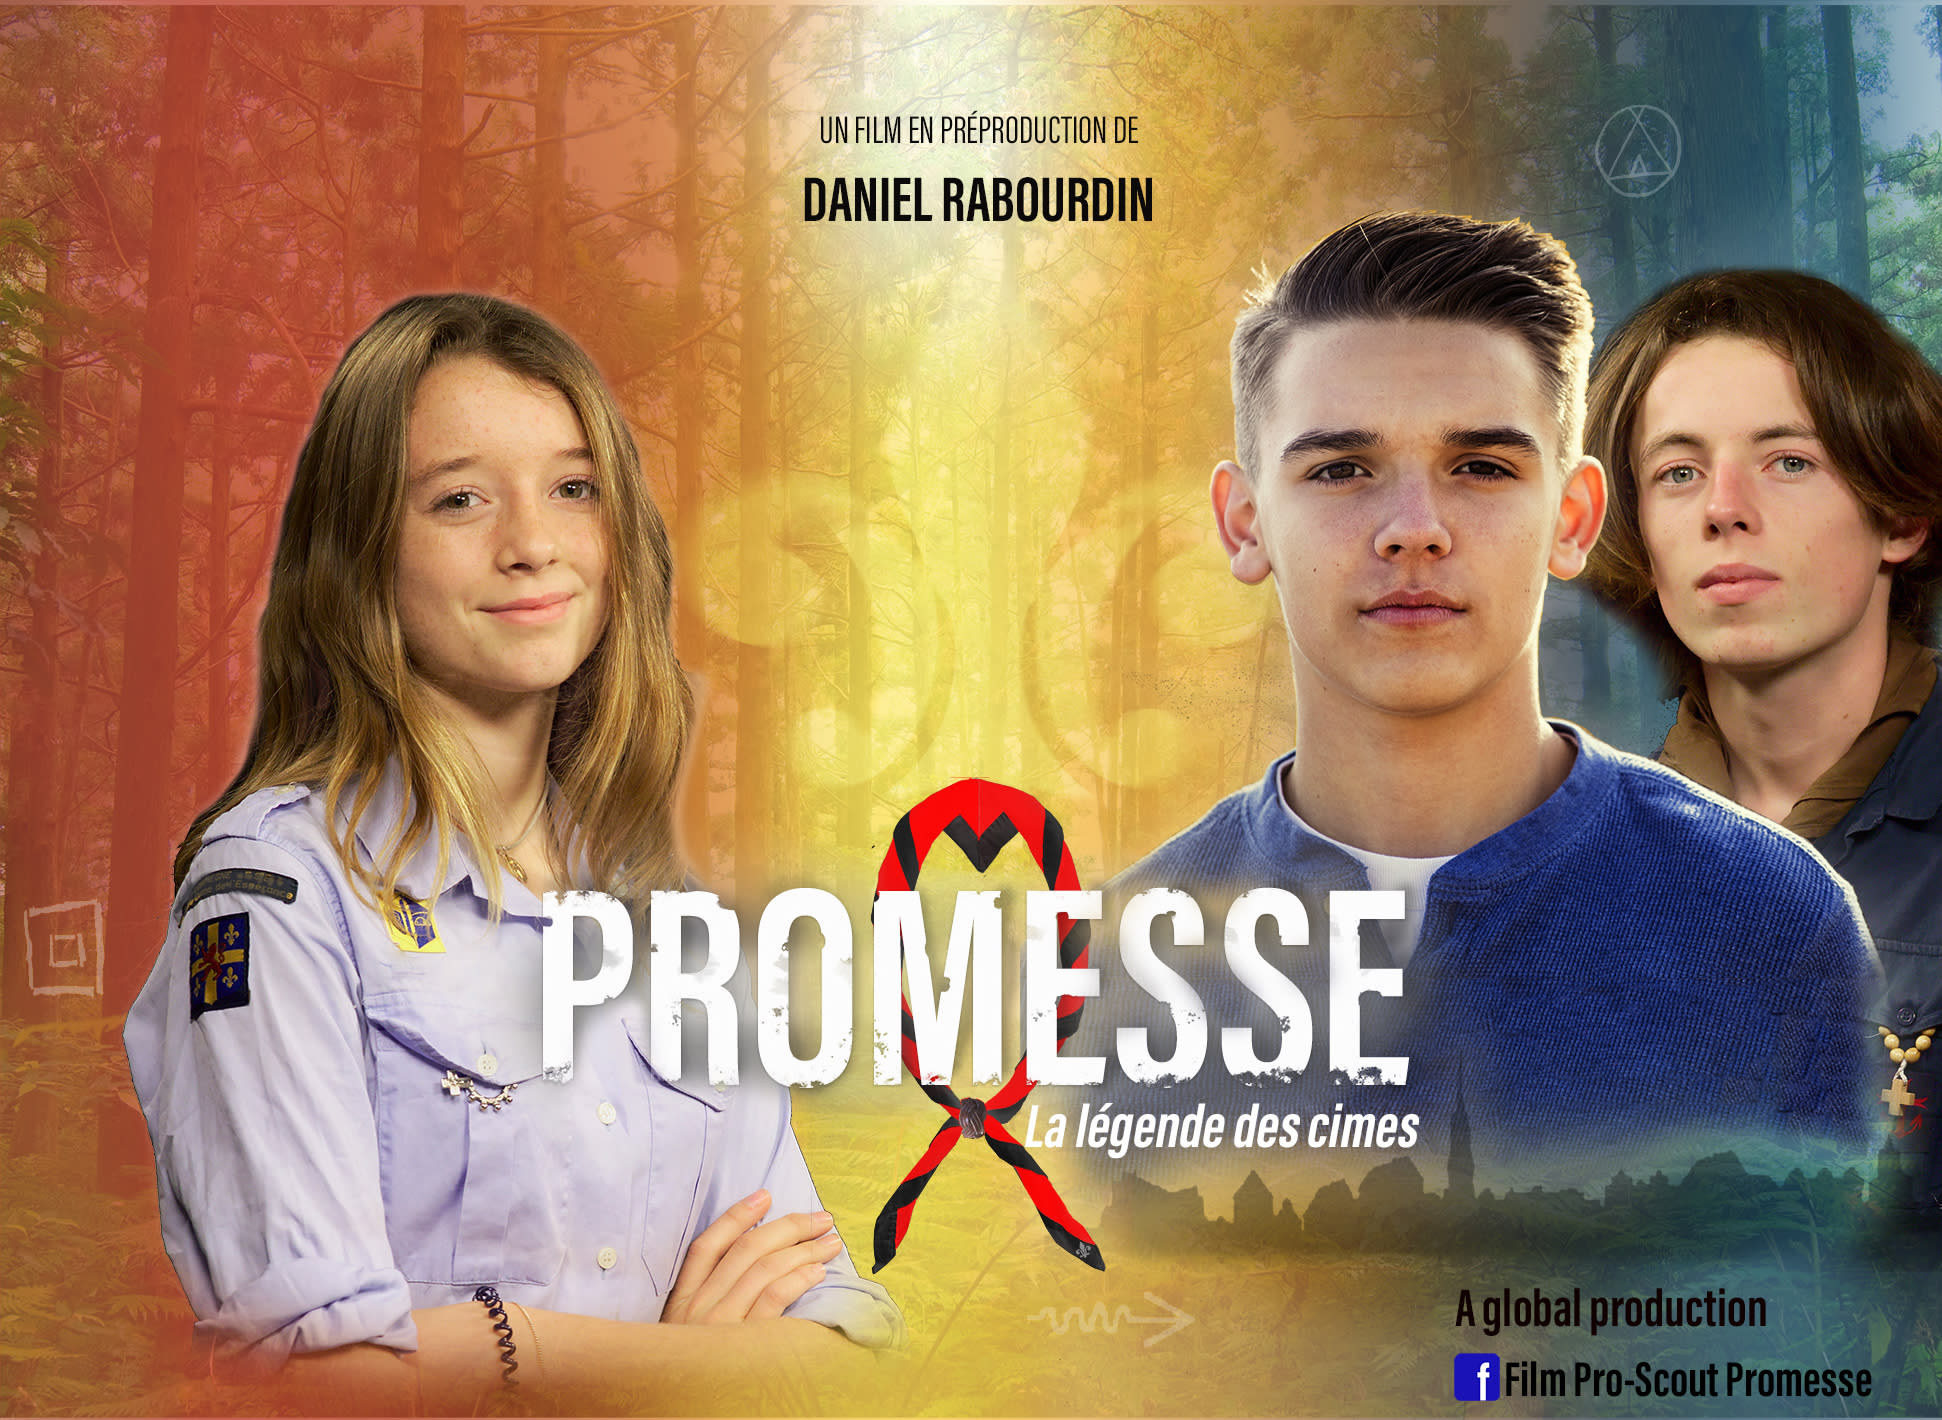 Promesse, le nouveau film à venir de Daniel Rabourdin